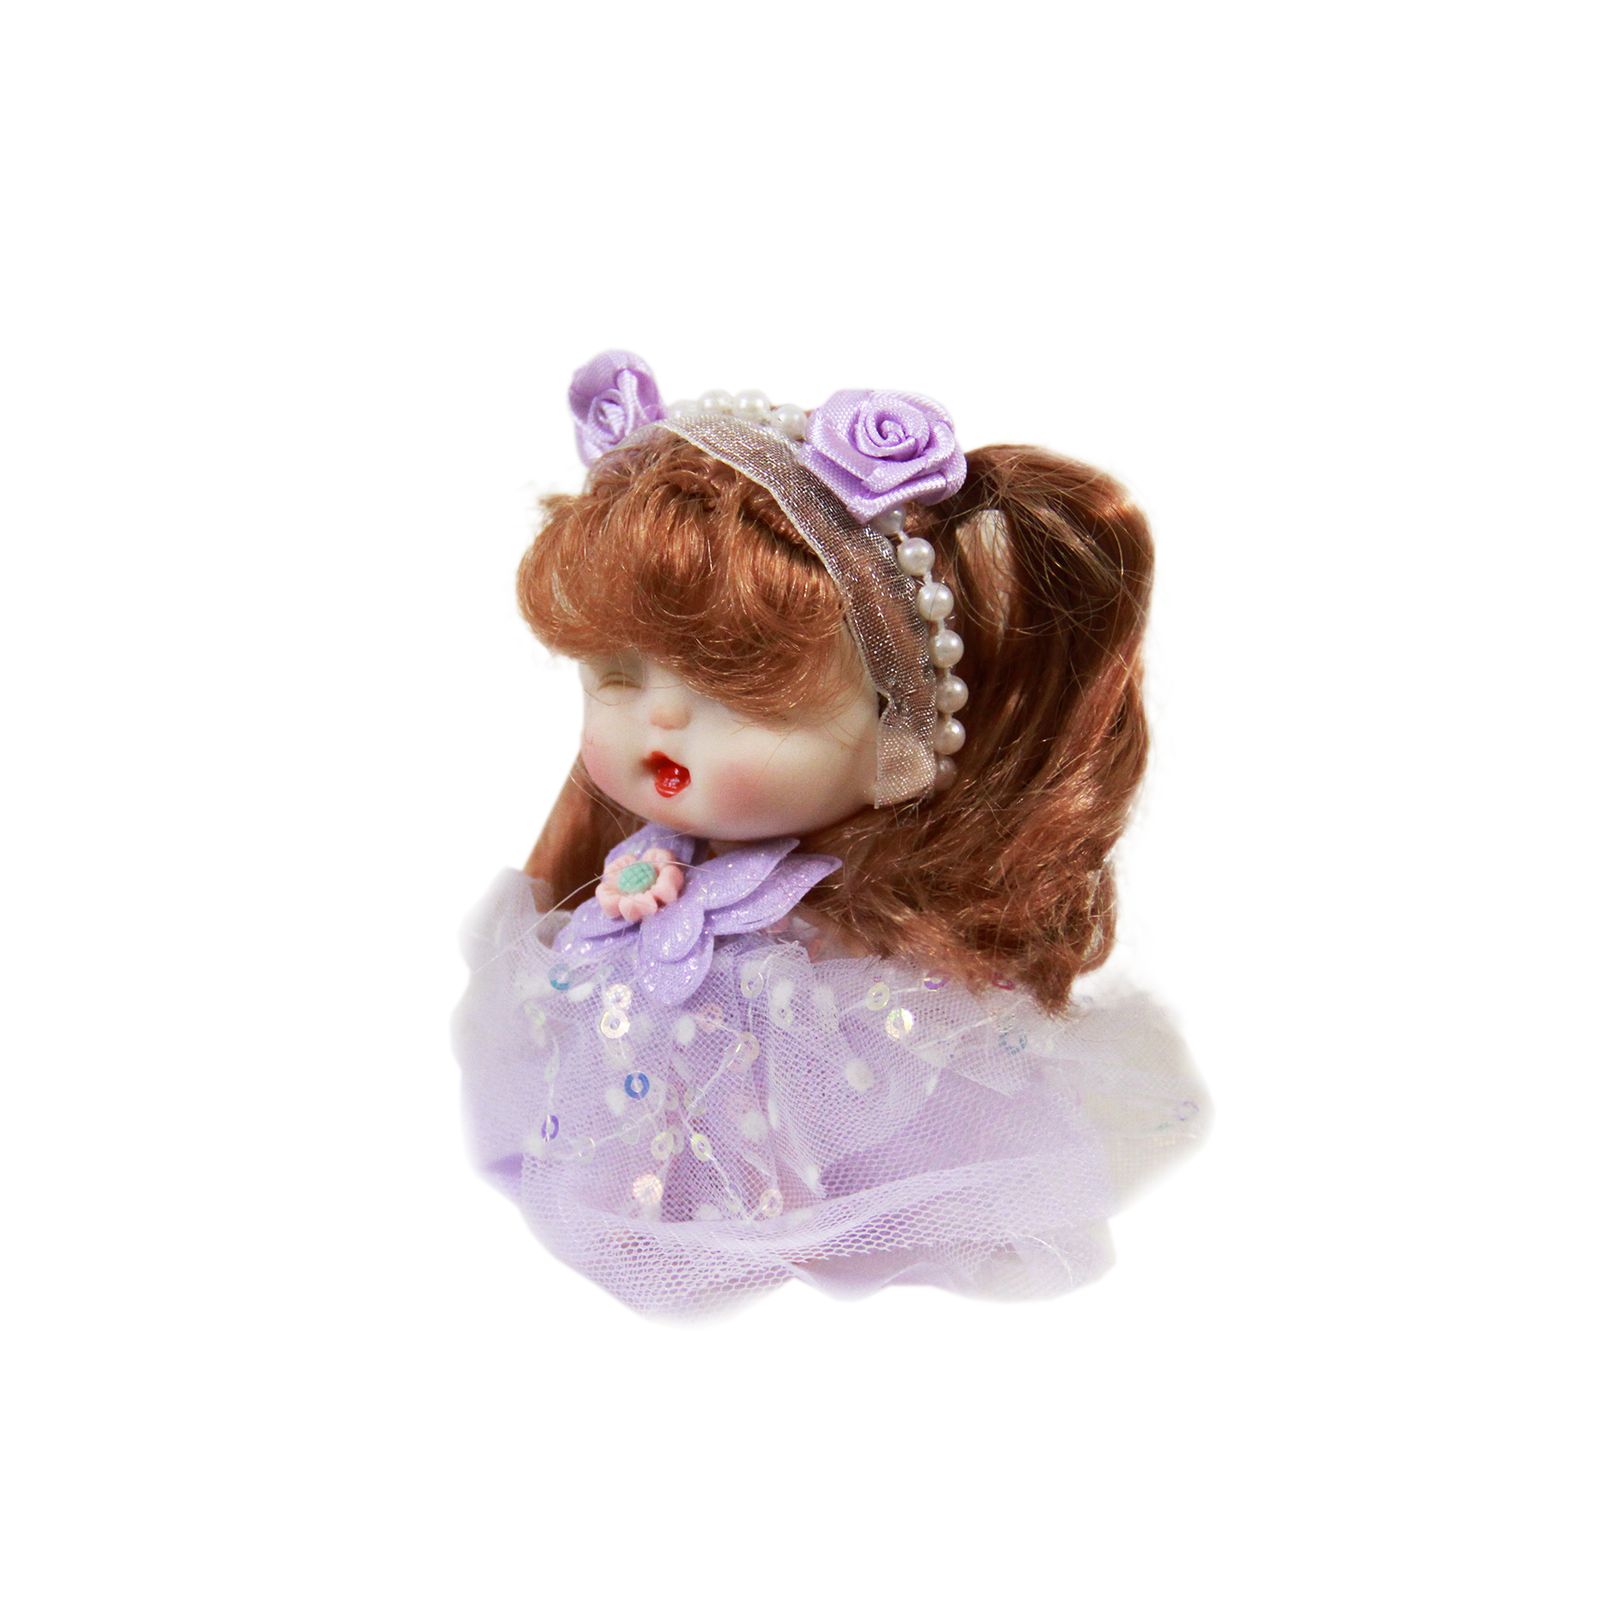  جاکلیدی دخترانه مدل عروسکی پرنسس کد AR 05 -  - 3